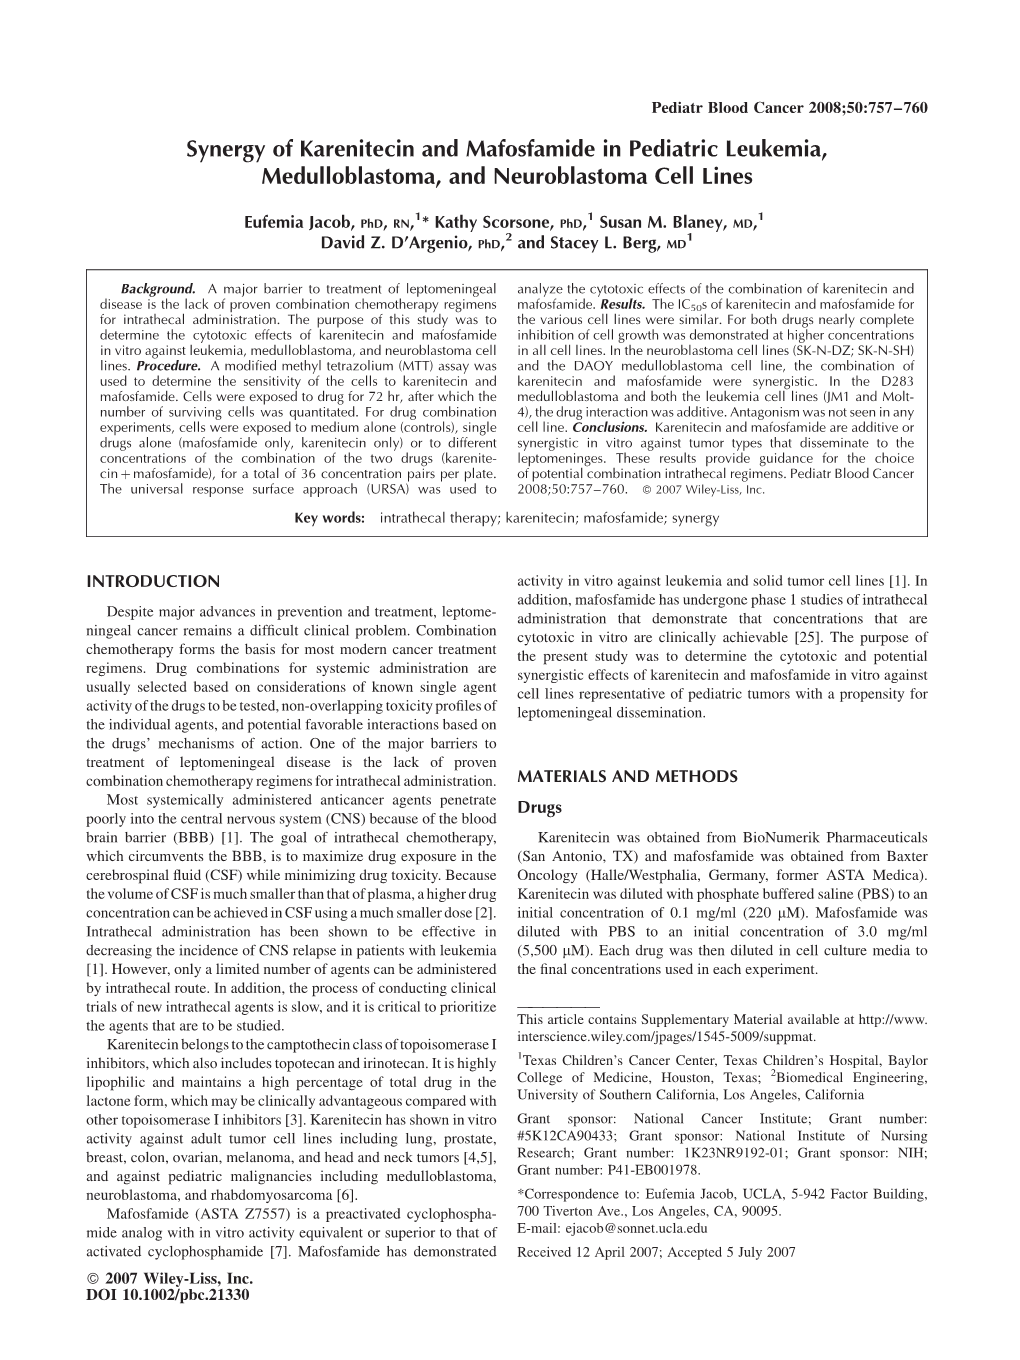 Synergy of Karenitecin and Mafosfamide in Pediatric Leukemia, Medulloblastoma, and Neuroblastoma Cell Lines